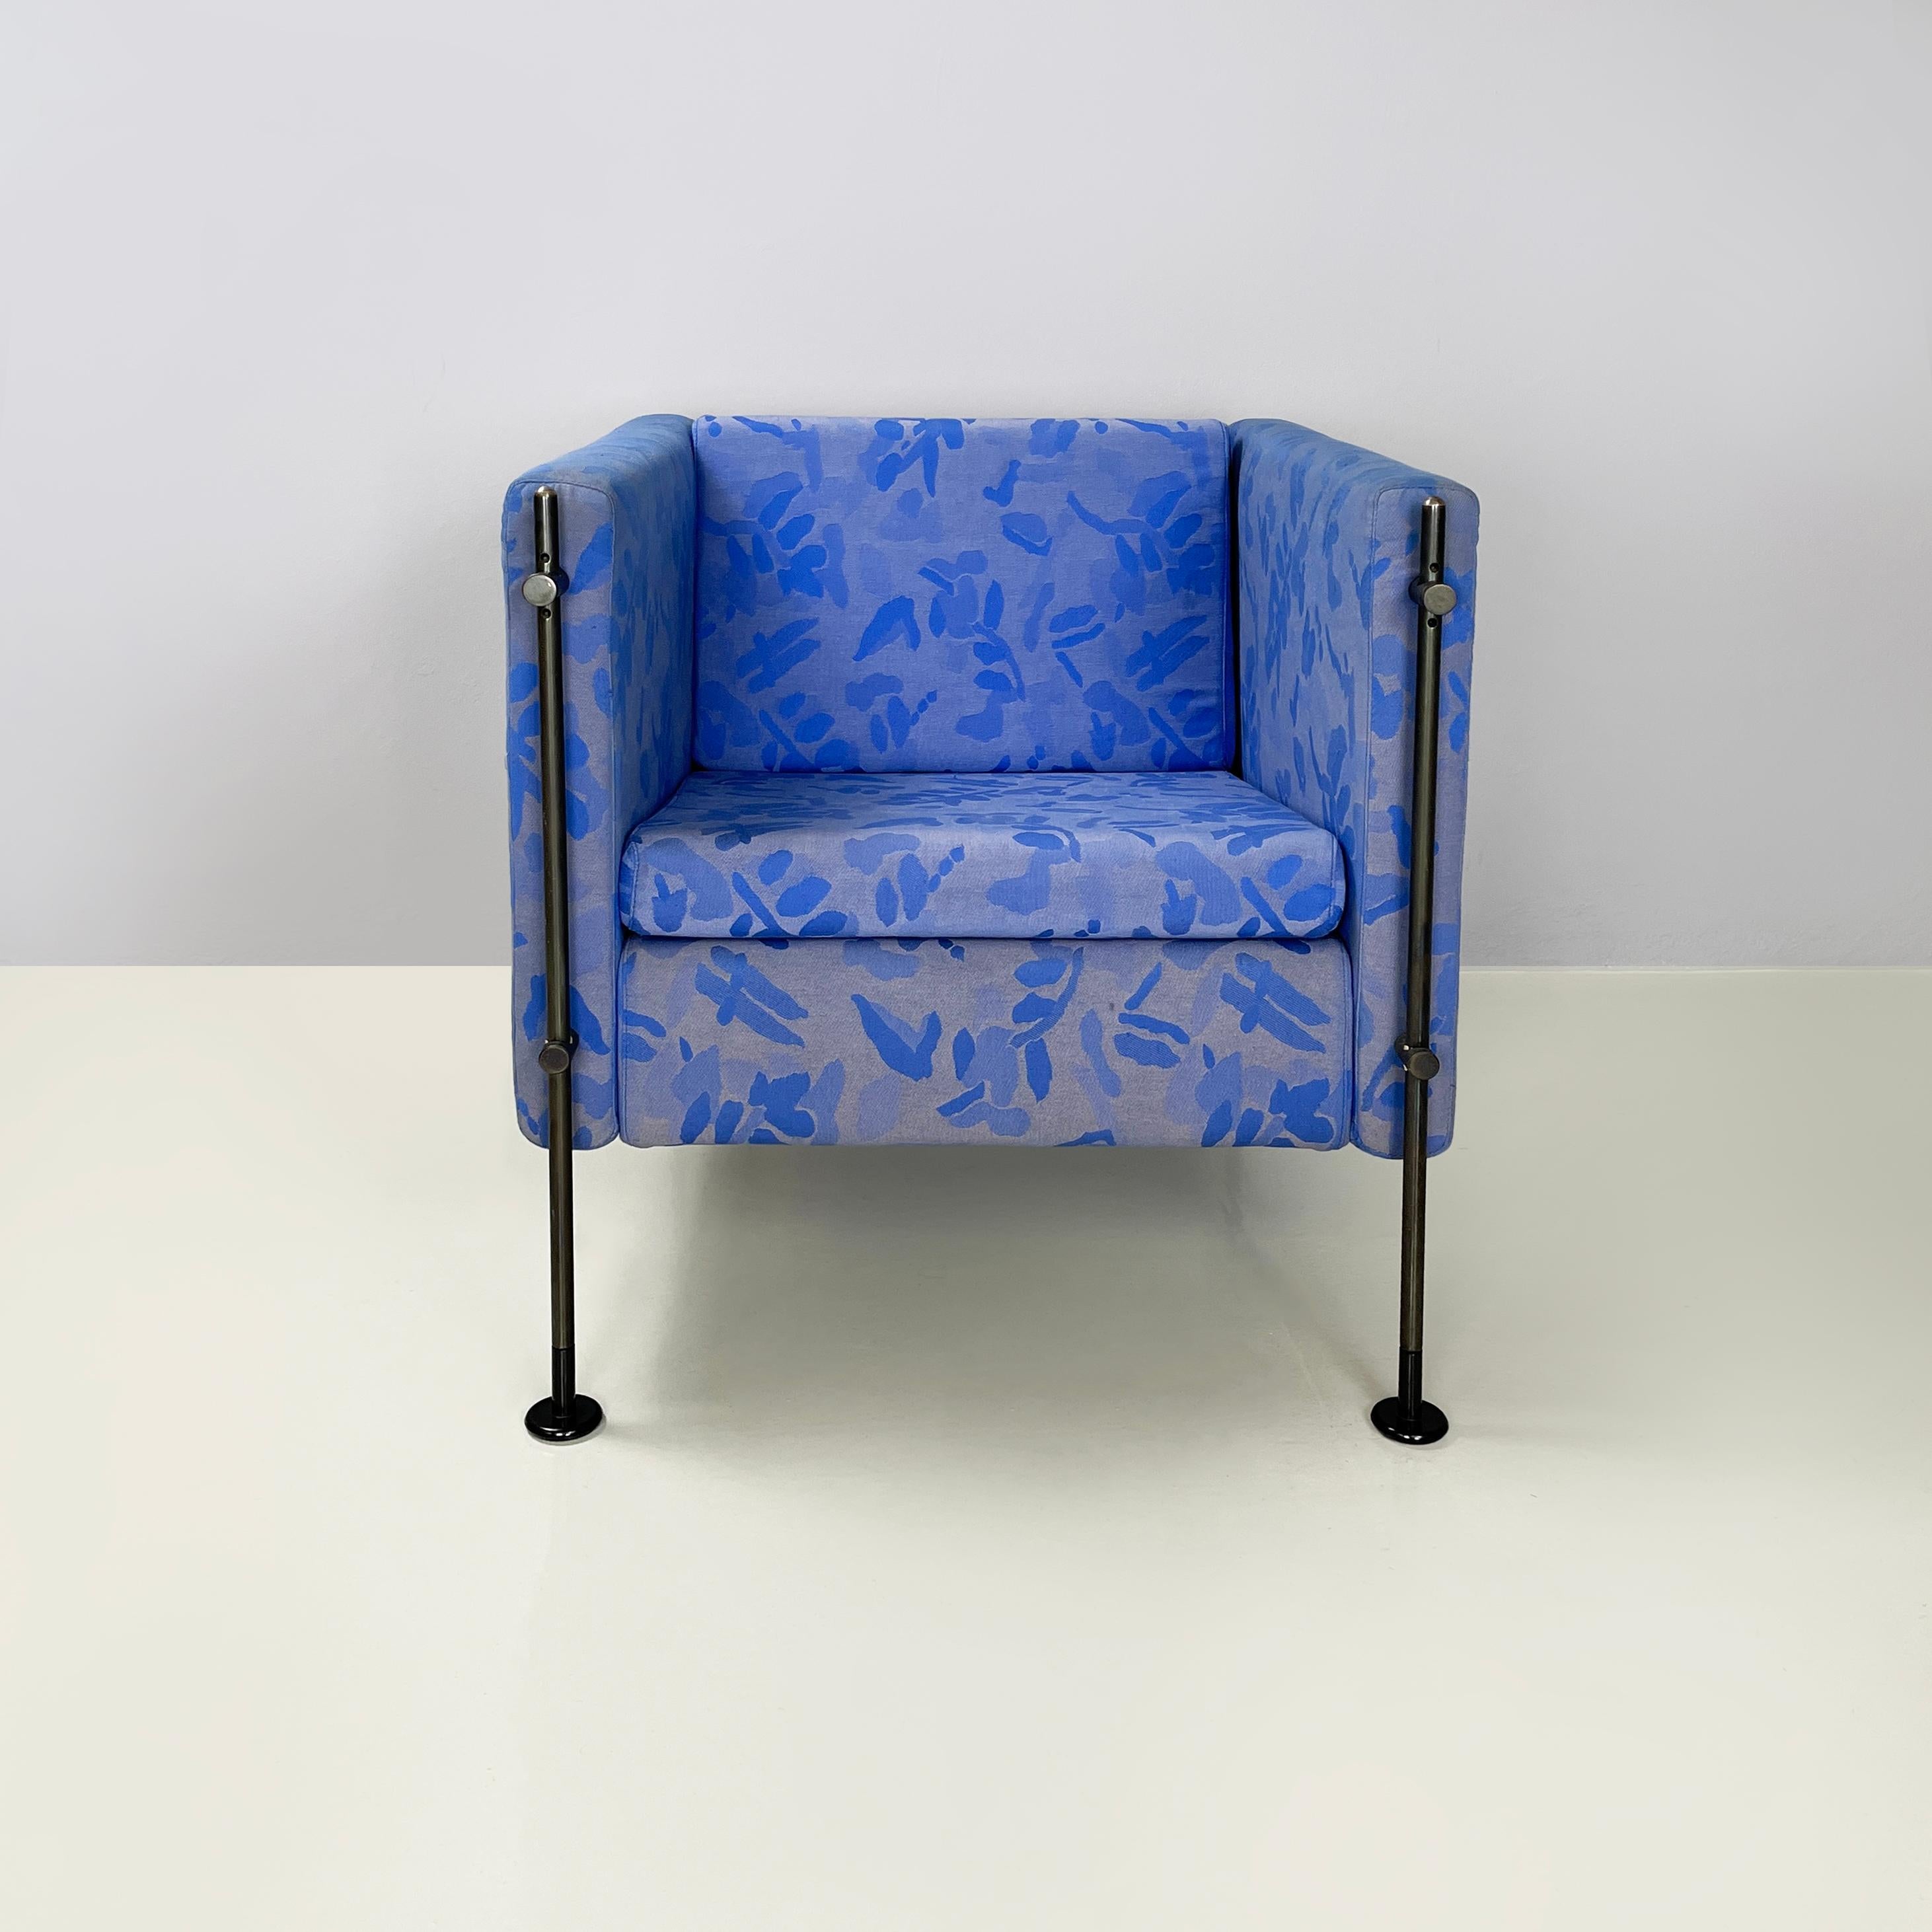 Fauteuil moderne italien en tissu Felix par Burkhard Vogtherr pour Arflex, années 1980
Fauteuil mod. Felix avec assise et dossier carrés, rembourrés et recouverts de tissu bleu avec motif floral abstrait. Les accoudoirs carrés sont également paddés